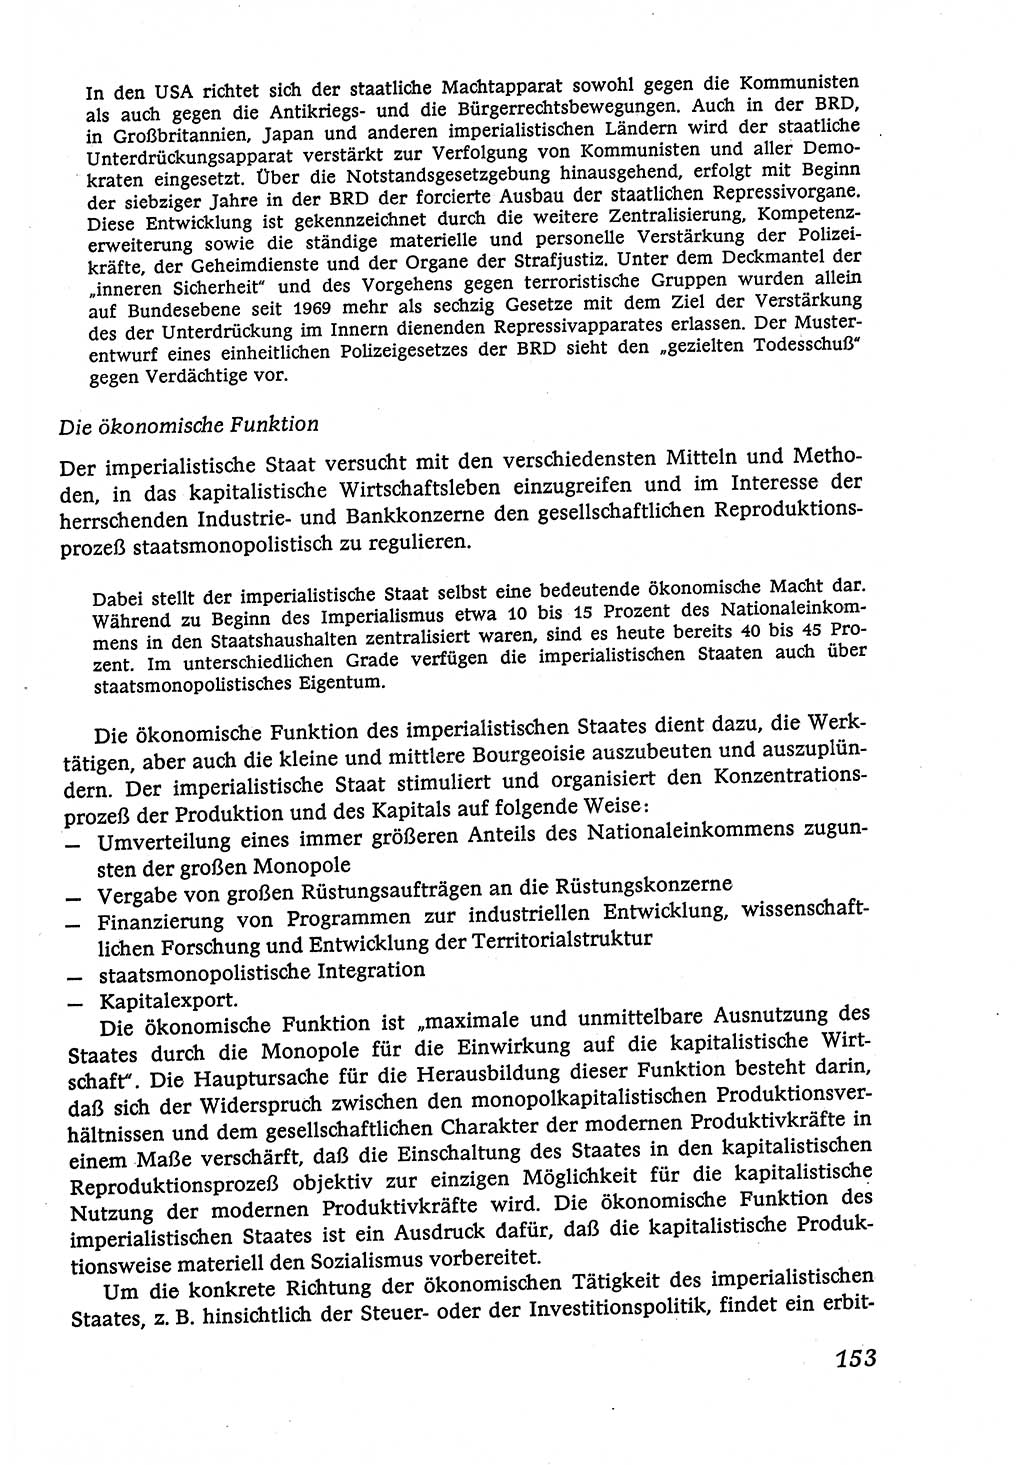 Marxistisch-leninistische (ML) Staats- und Rechtstheorie [Deutsche Demokratische Republik (DDR)], Lehrbuch 1980, Seite 153 (ML St.-R.-Th. DDR Lb. 1980, S. 153)